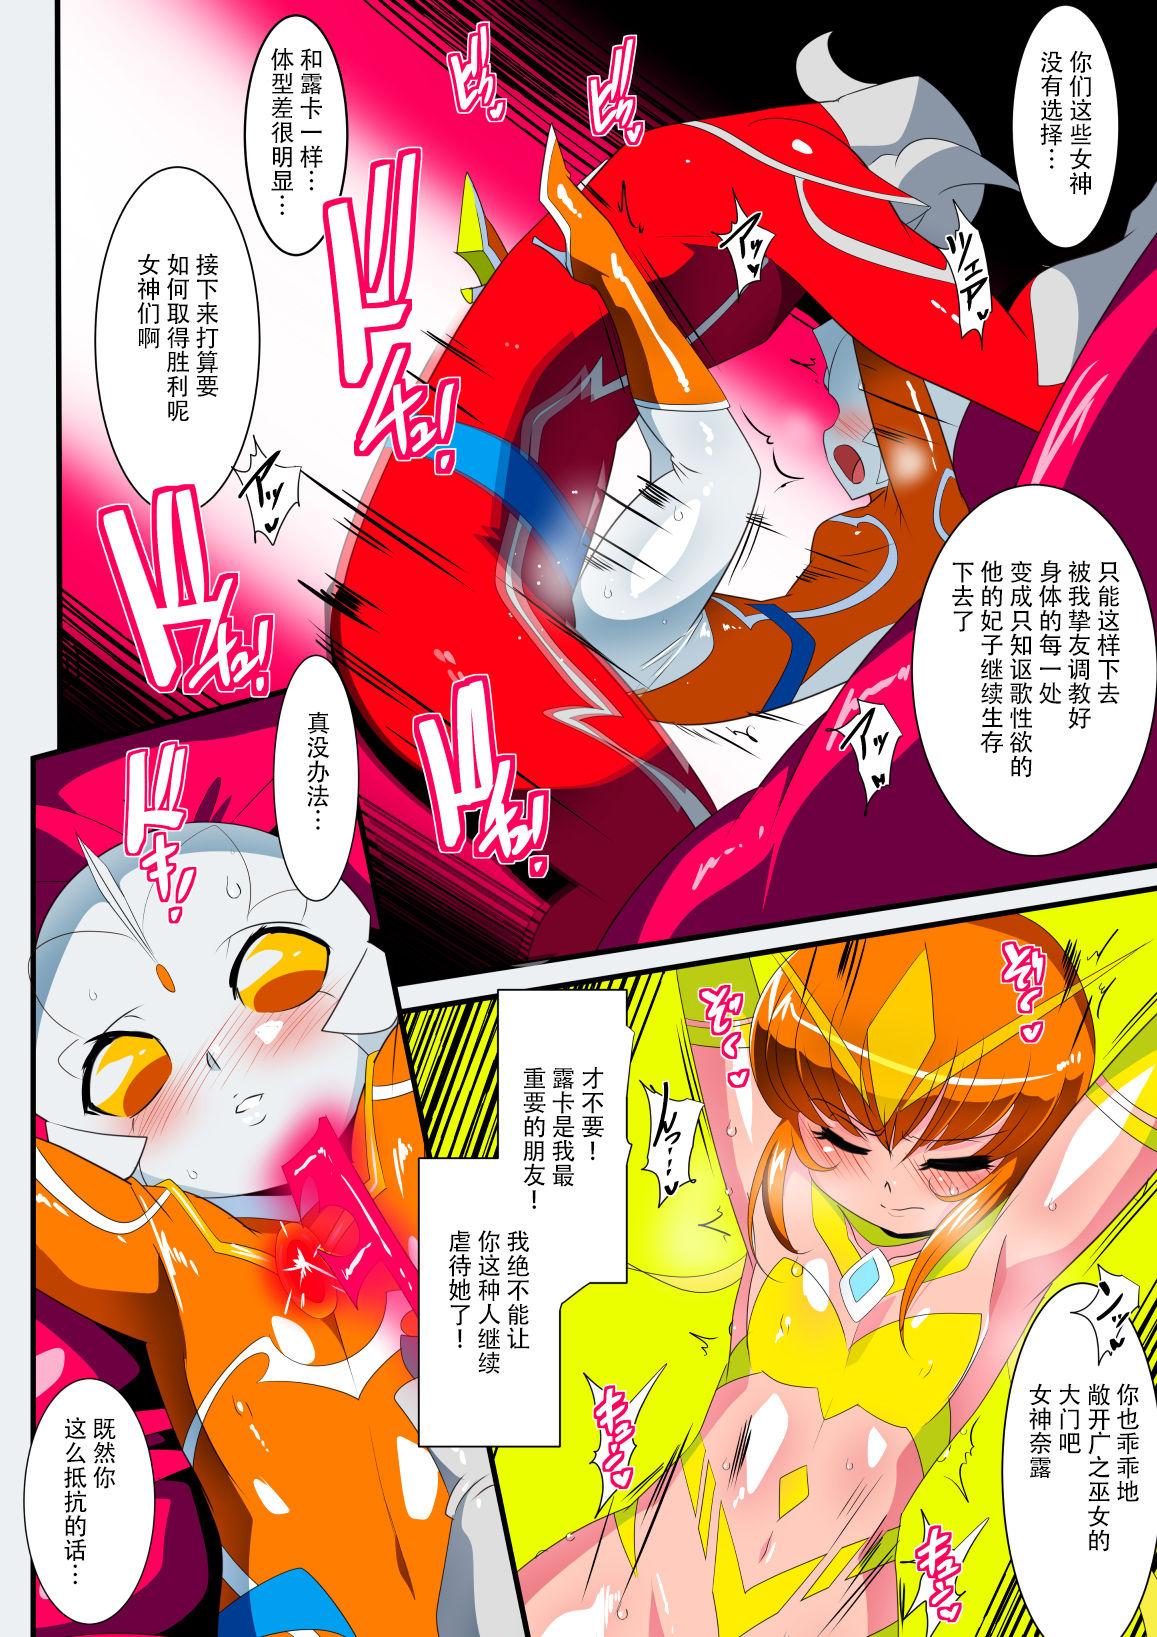 Girls Ginga no Megami Netise IX - Ultraman Brasileiro - Page 6